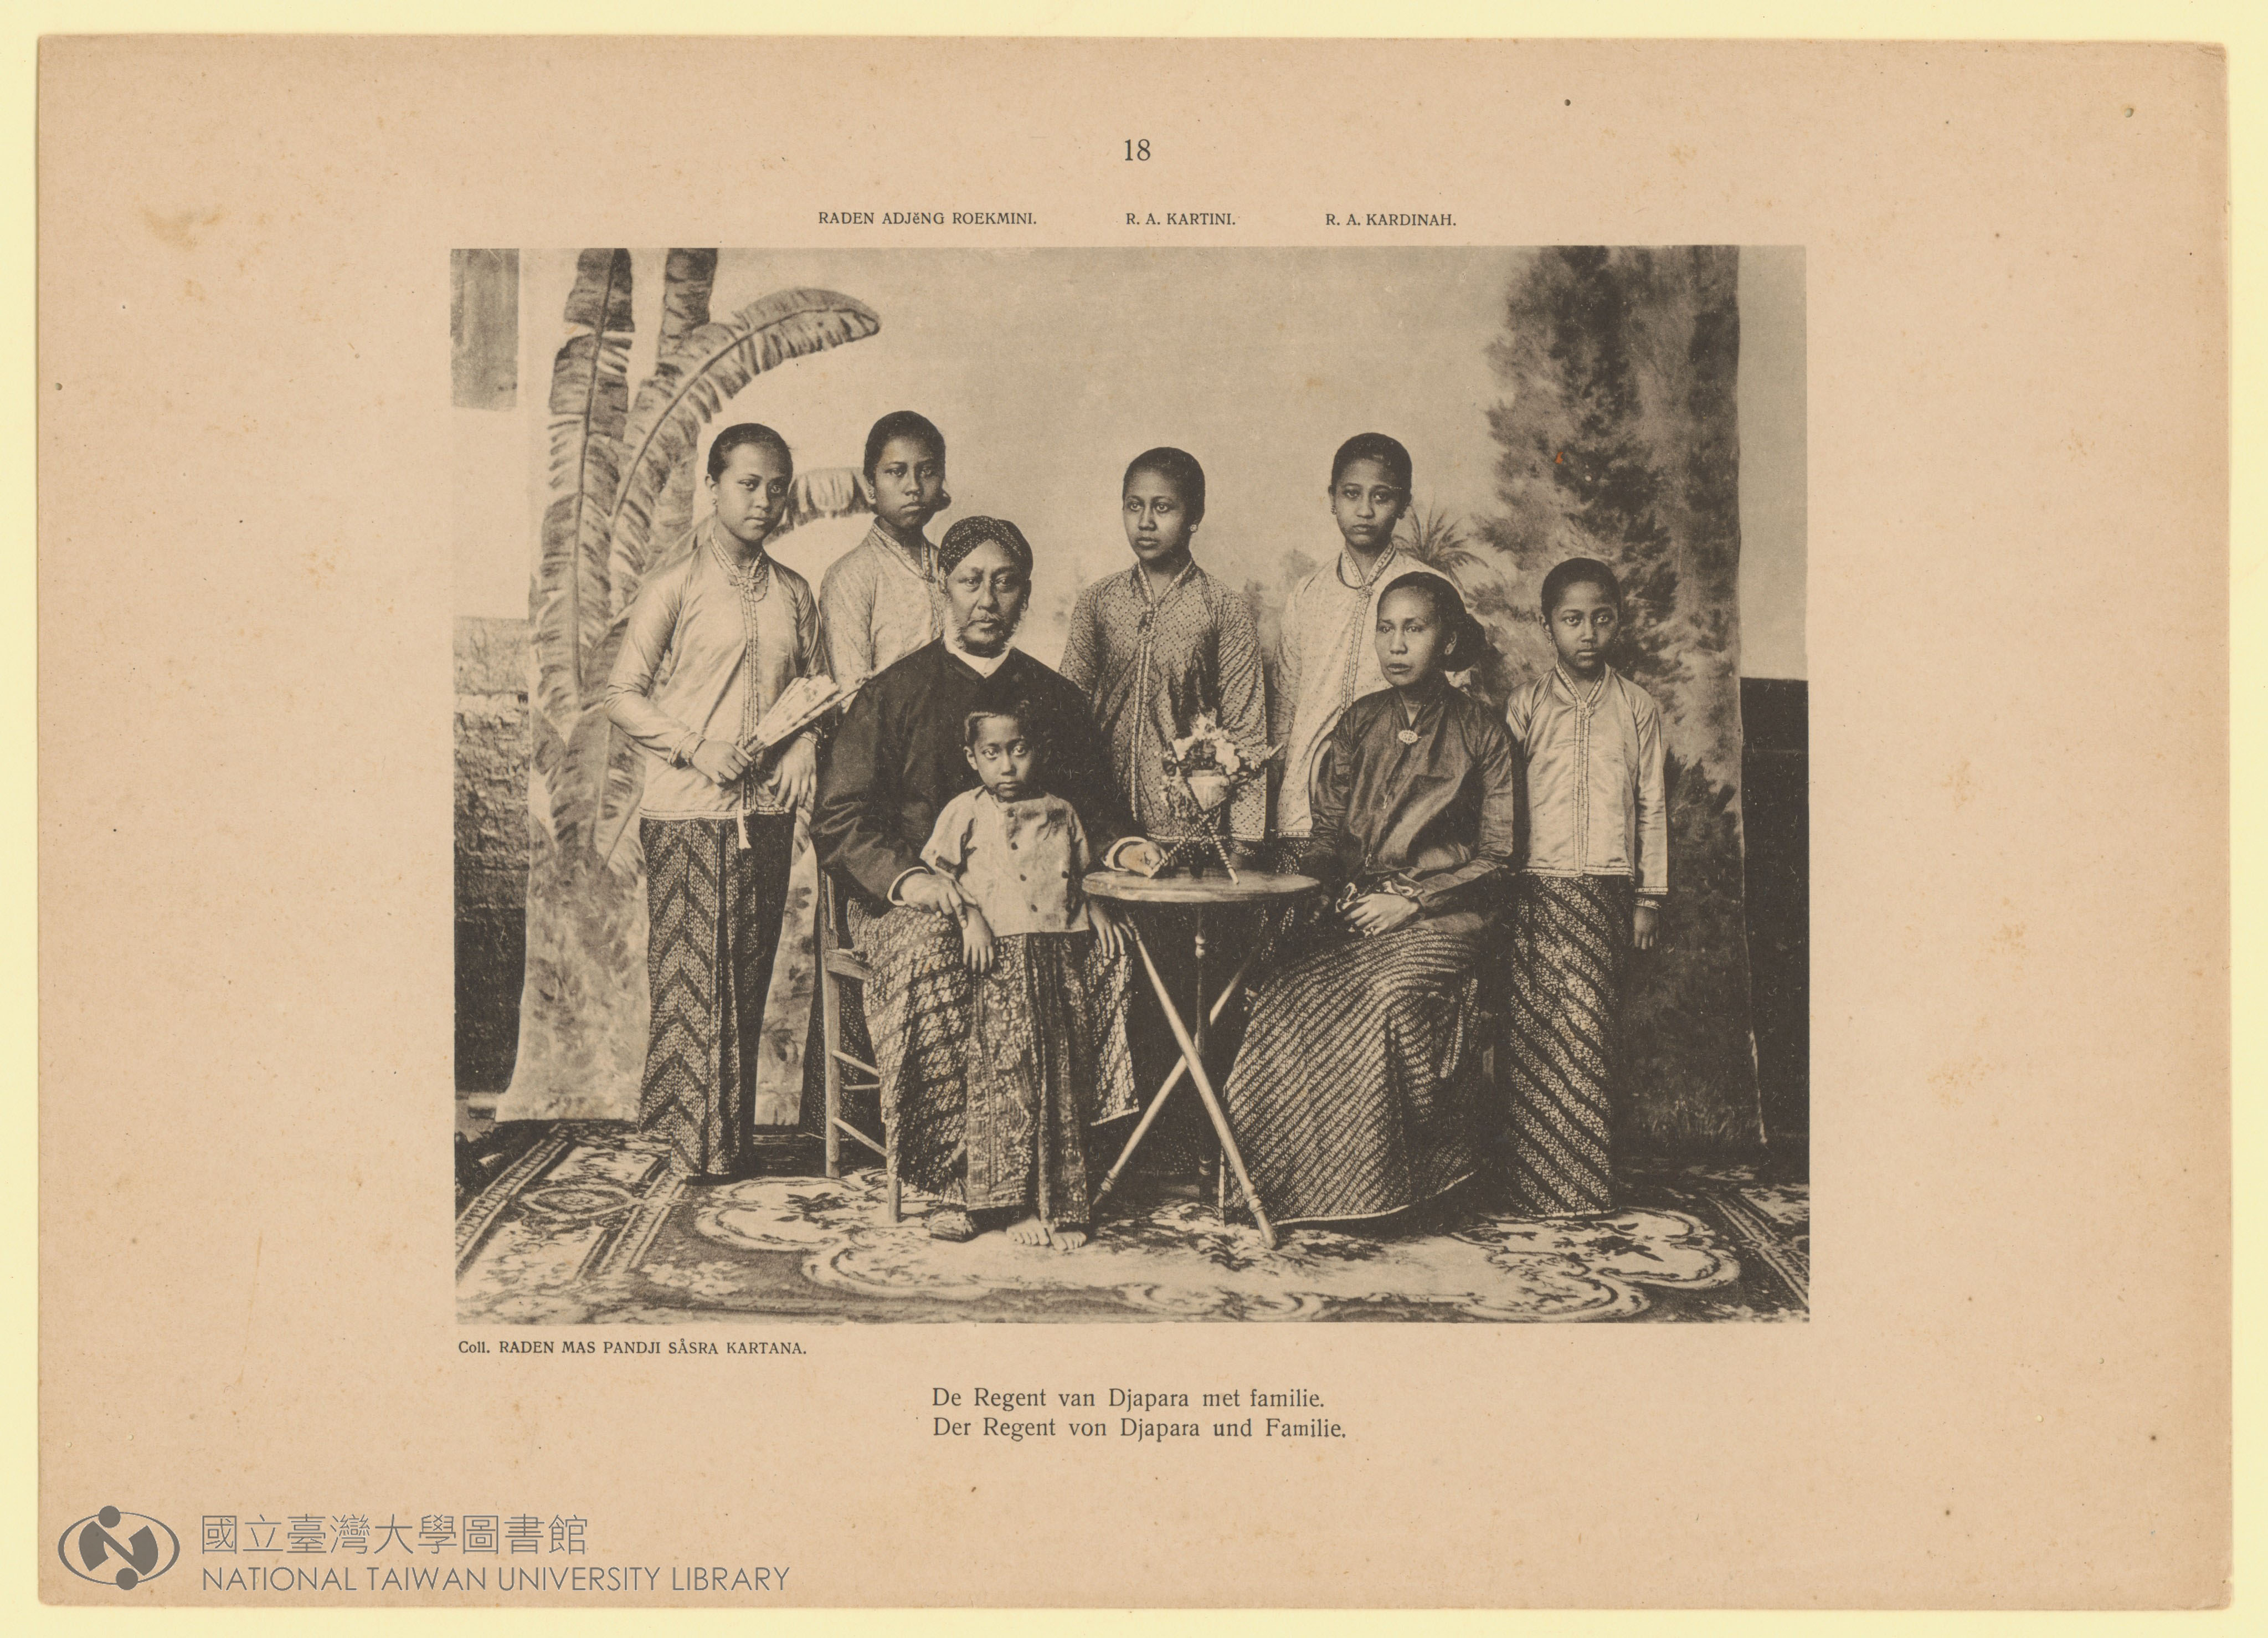 卡蒂尼家族合照《荷蘭東印度蠟染藝術及其歷史》書籍插圖